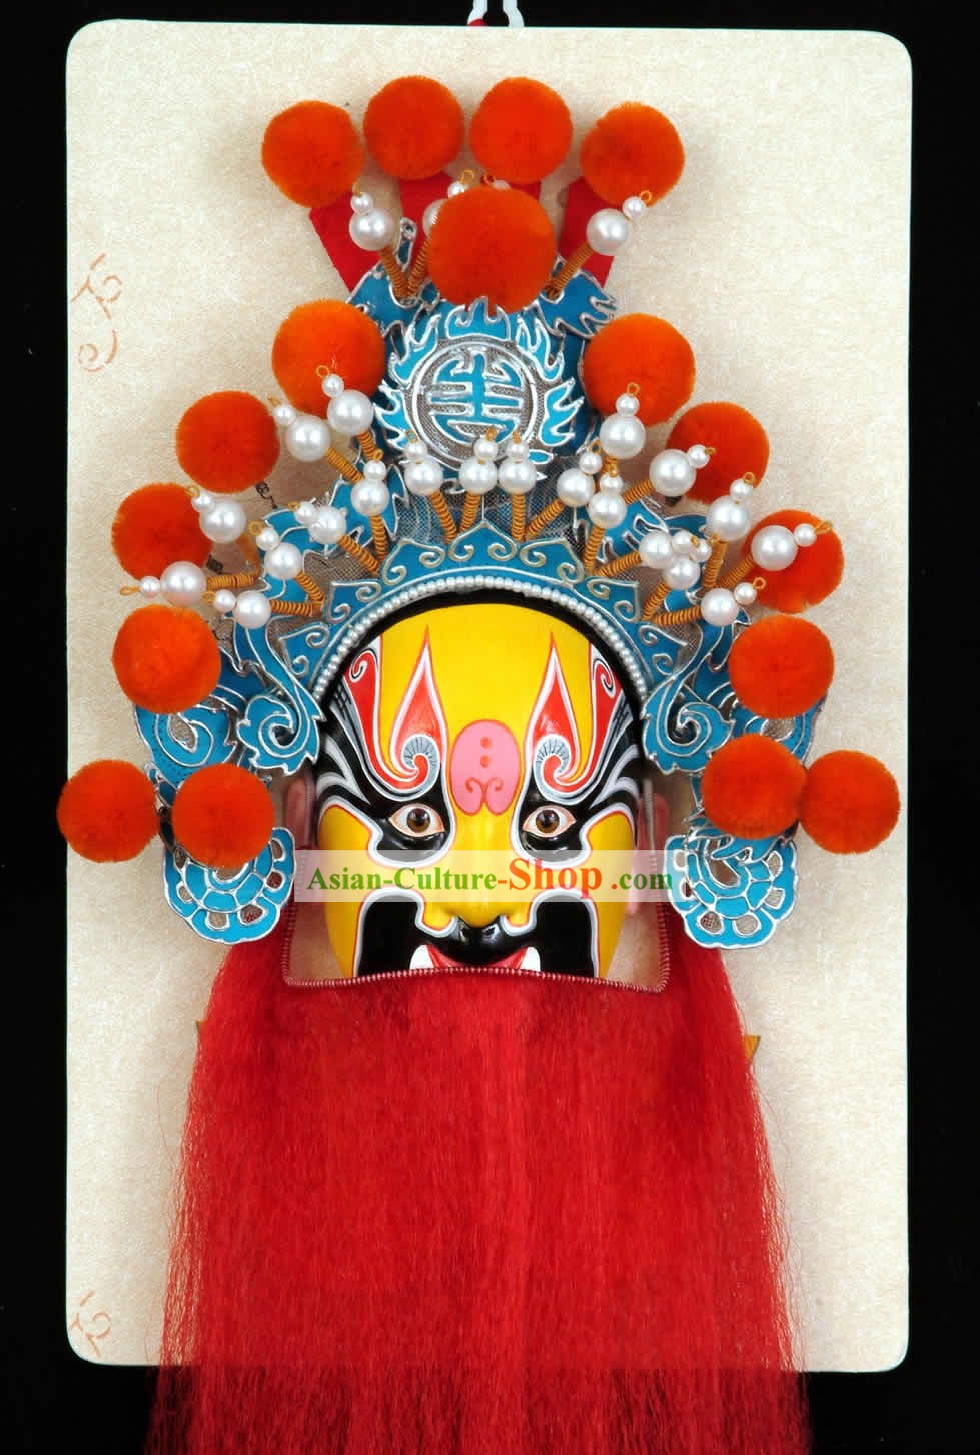 Artigianali dell'Opera di Pechino Decorazione maschera appendiabiti - Dian Wei